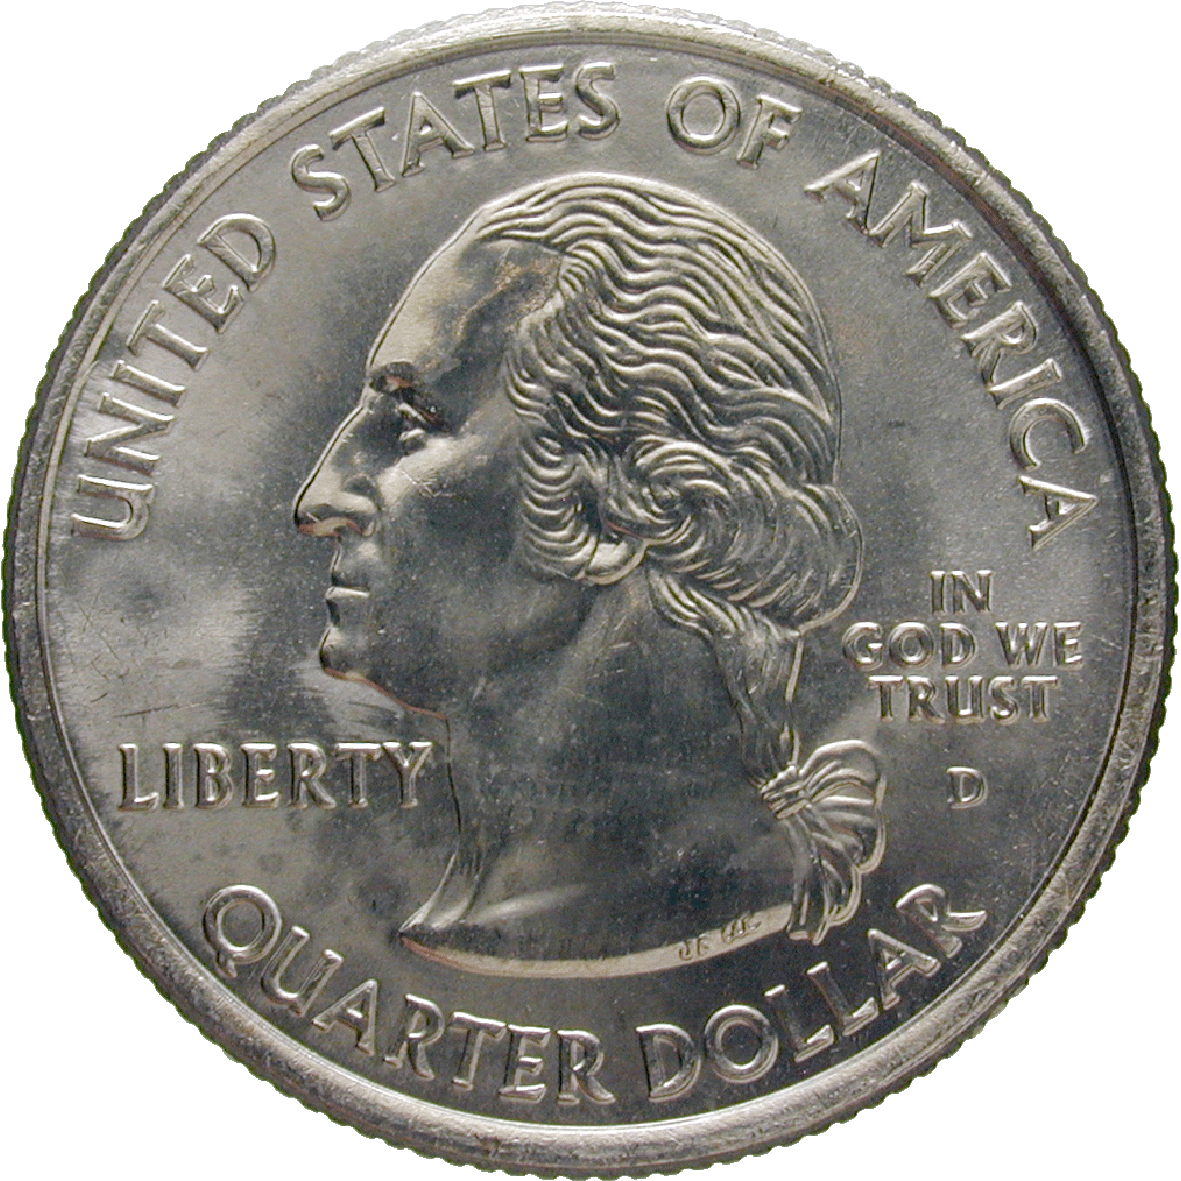 Vereinigte Staaten von Amerika, Quarter Dollar 2006 (obverse)